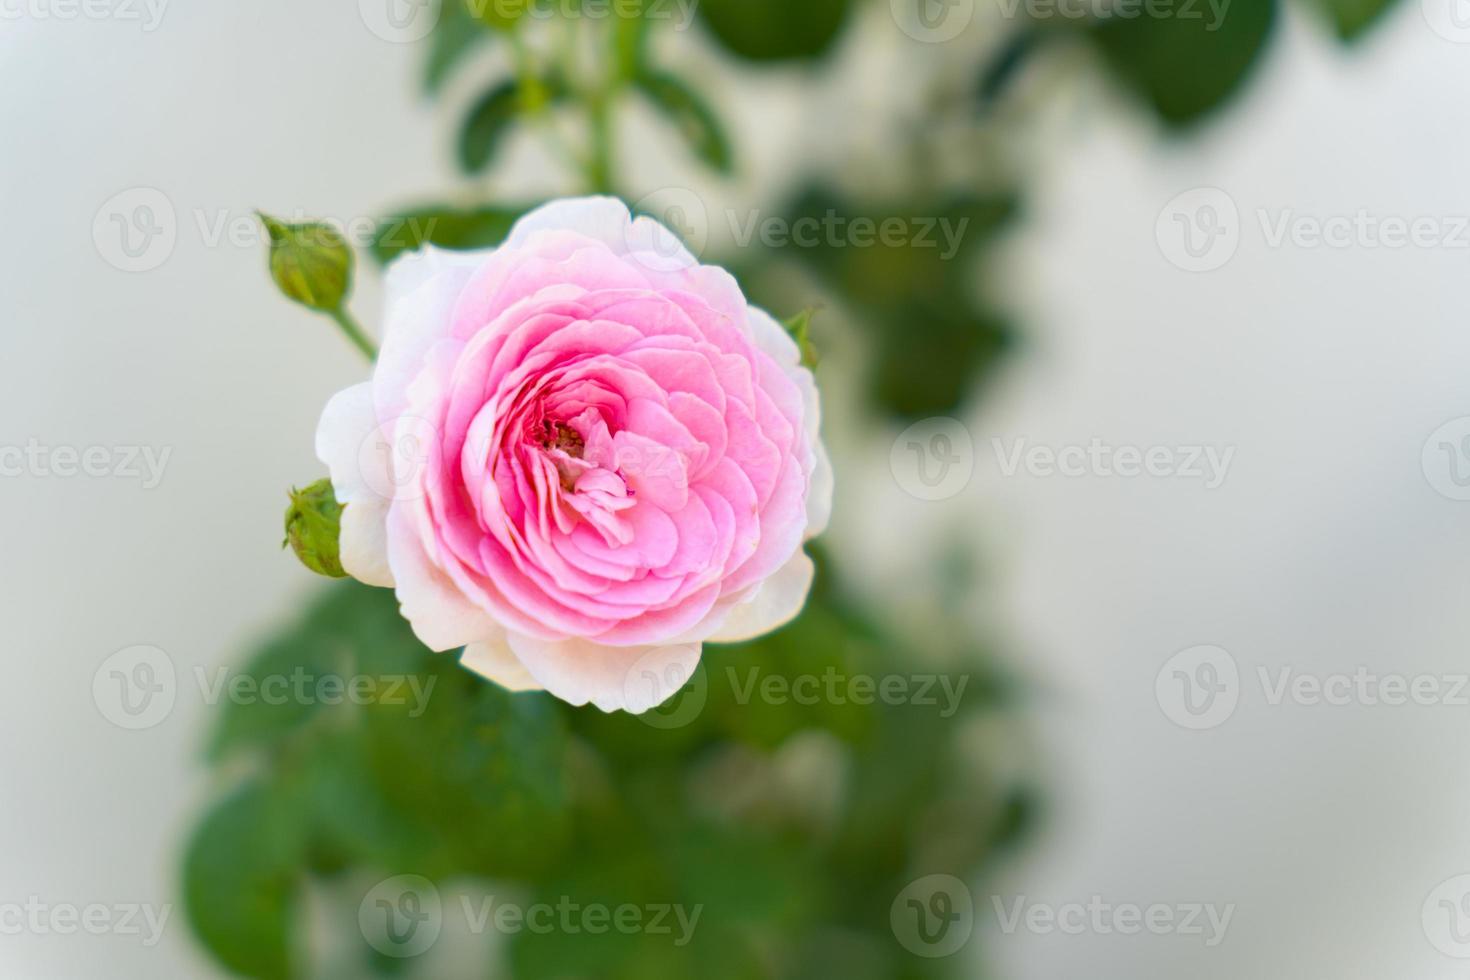 fleur dans le jardin avec fond vert flou, belle rose rose et plantes vertes dans le parc. branches de rose en fleurs avec un accent doux sur un fond vert doux photo